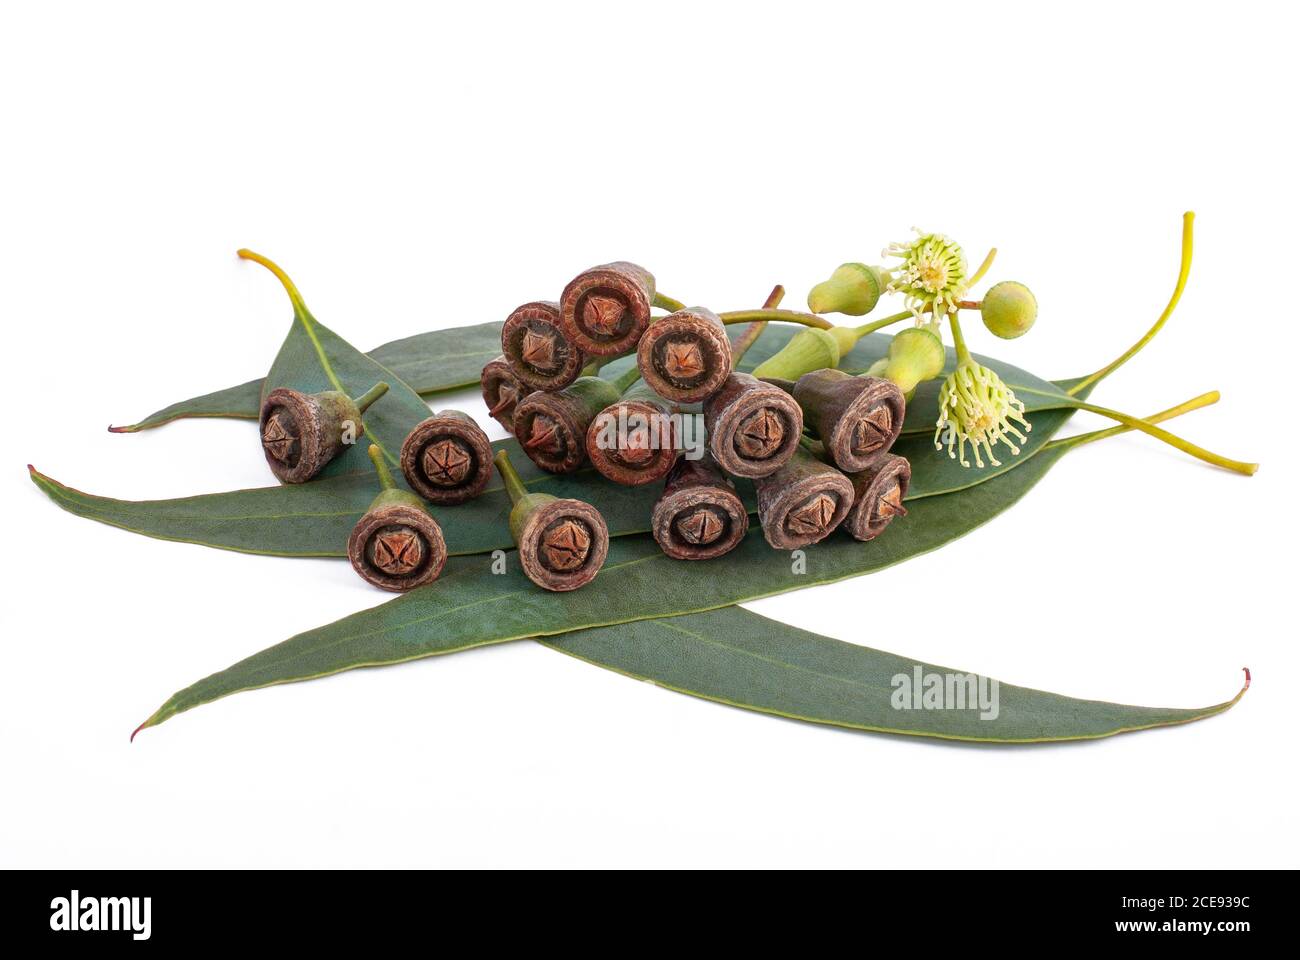 Des feuilles d'eucalyptus avec des fleurs et des graines isolated on white Banque D'Images